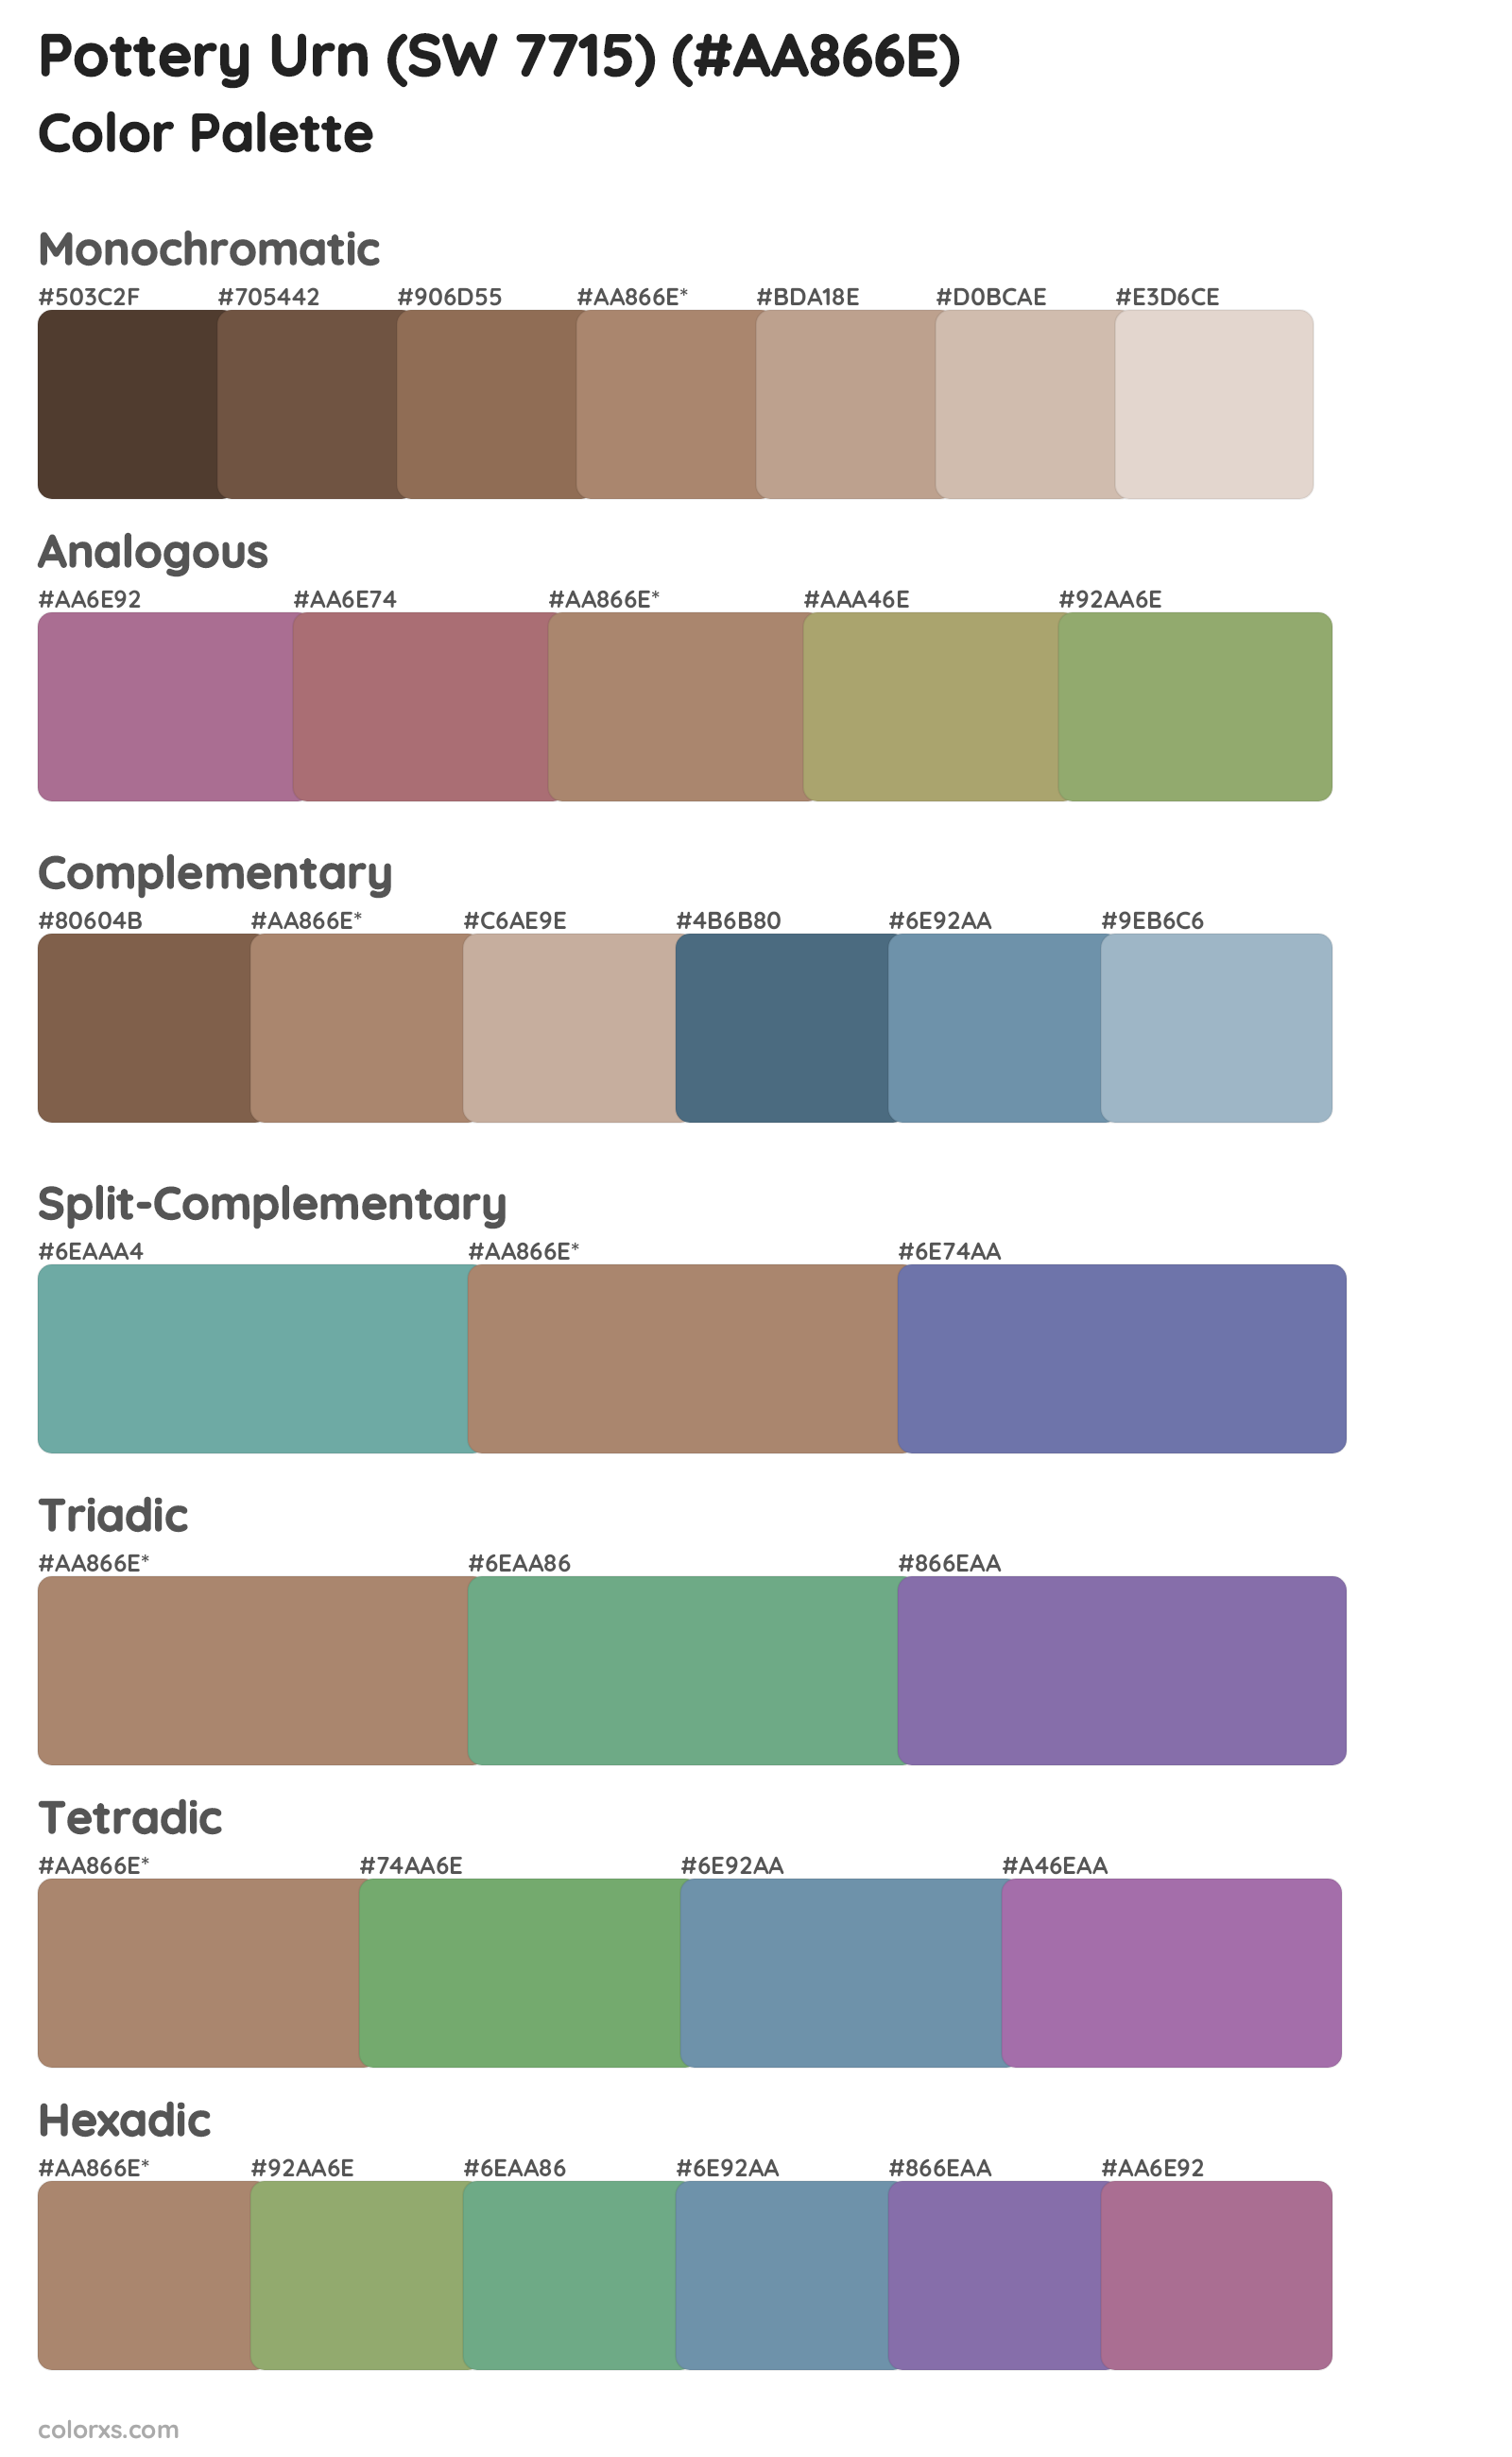 Pottery Urn (SW 7715) Color Scheme Palettes